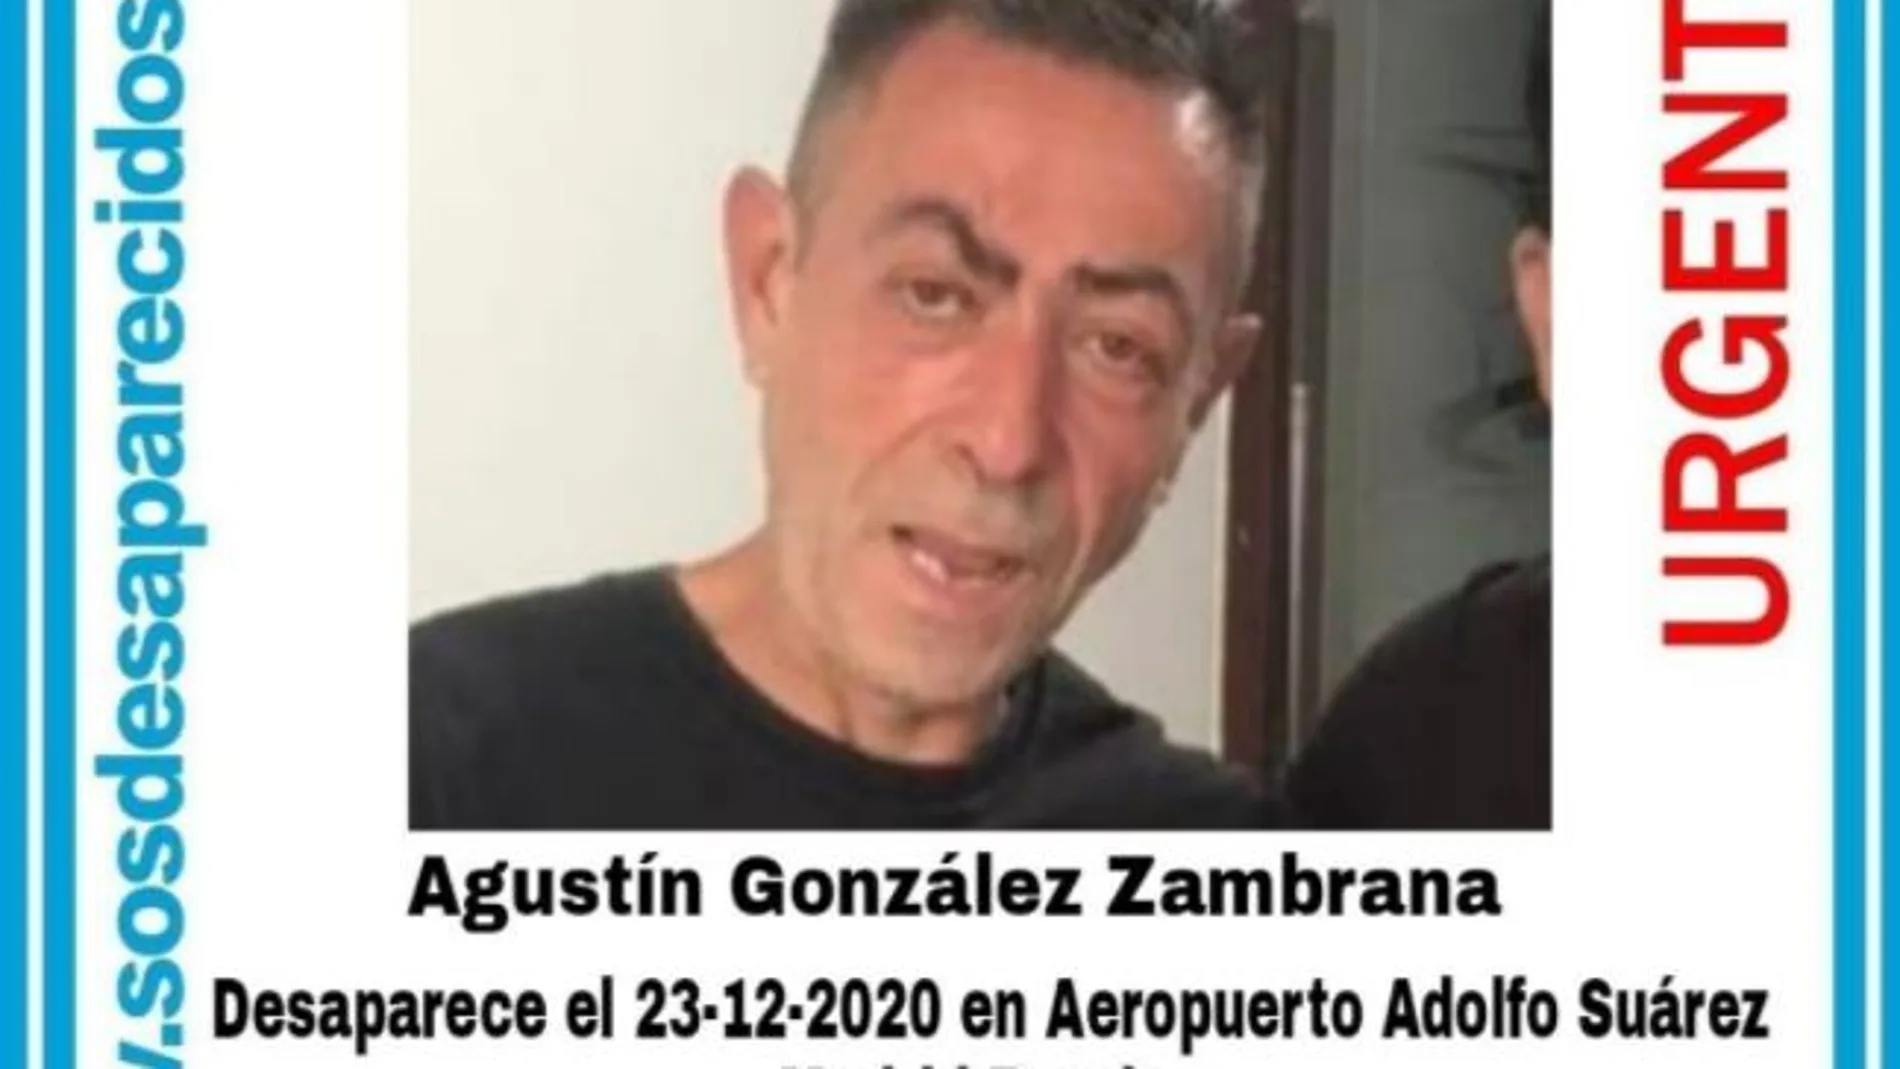 SOS Desaparecidos ha tenido que difundir un nuevo cartel para buscar a Agustín por Madrid tras haberle localizado en Perú hace un mes